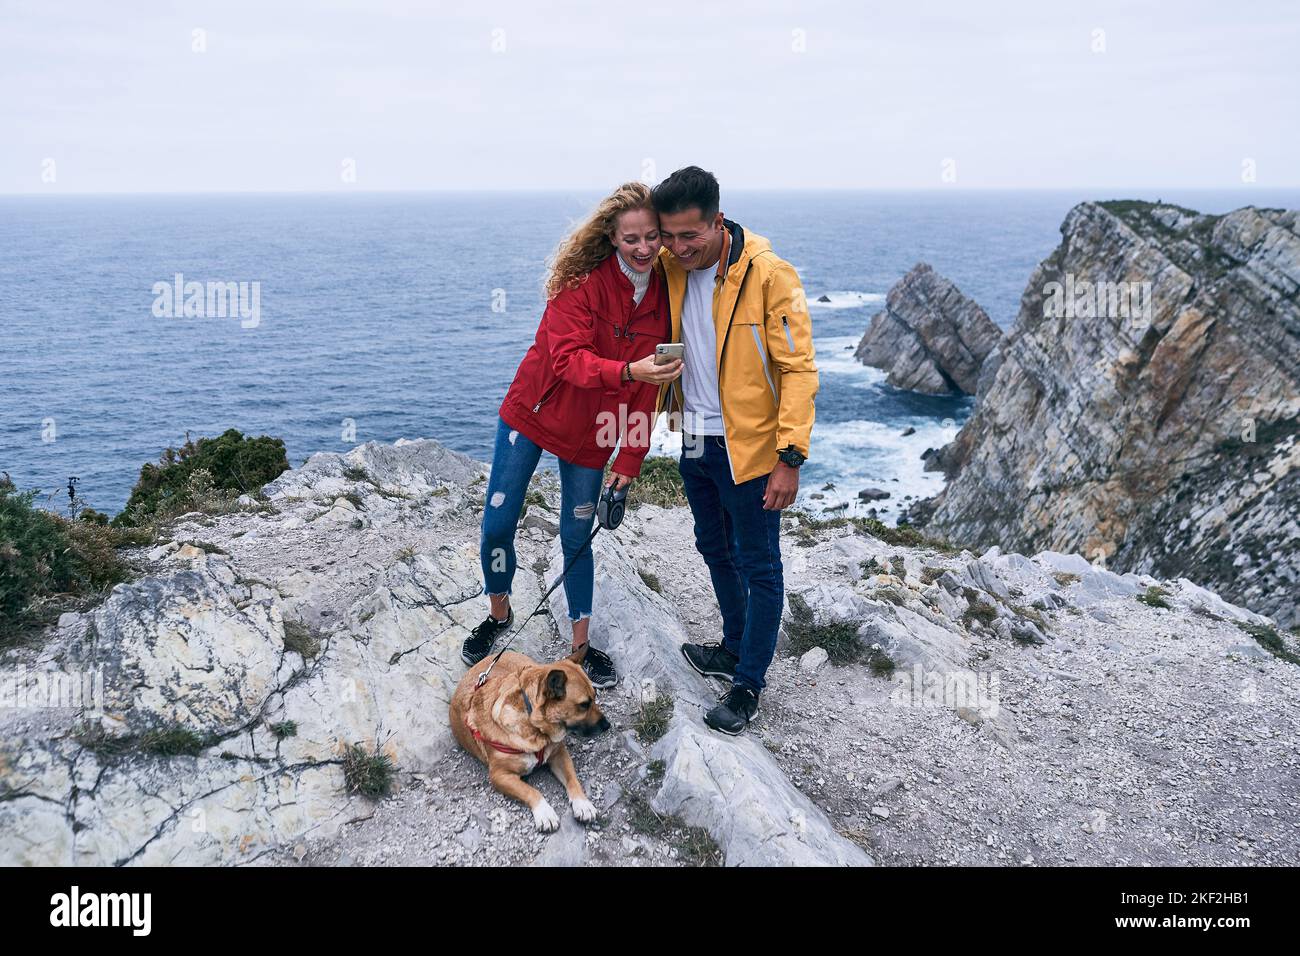 Blonde kaukasische Mädchen mit großen Hund auf dem Boden liegen und latein Kerl Spaß auf den Felsen in der Nähe des Meeres Blick auf den Smartphone-Bildschirm, cabo de Stockfoto